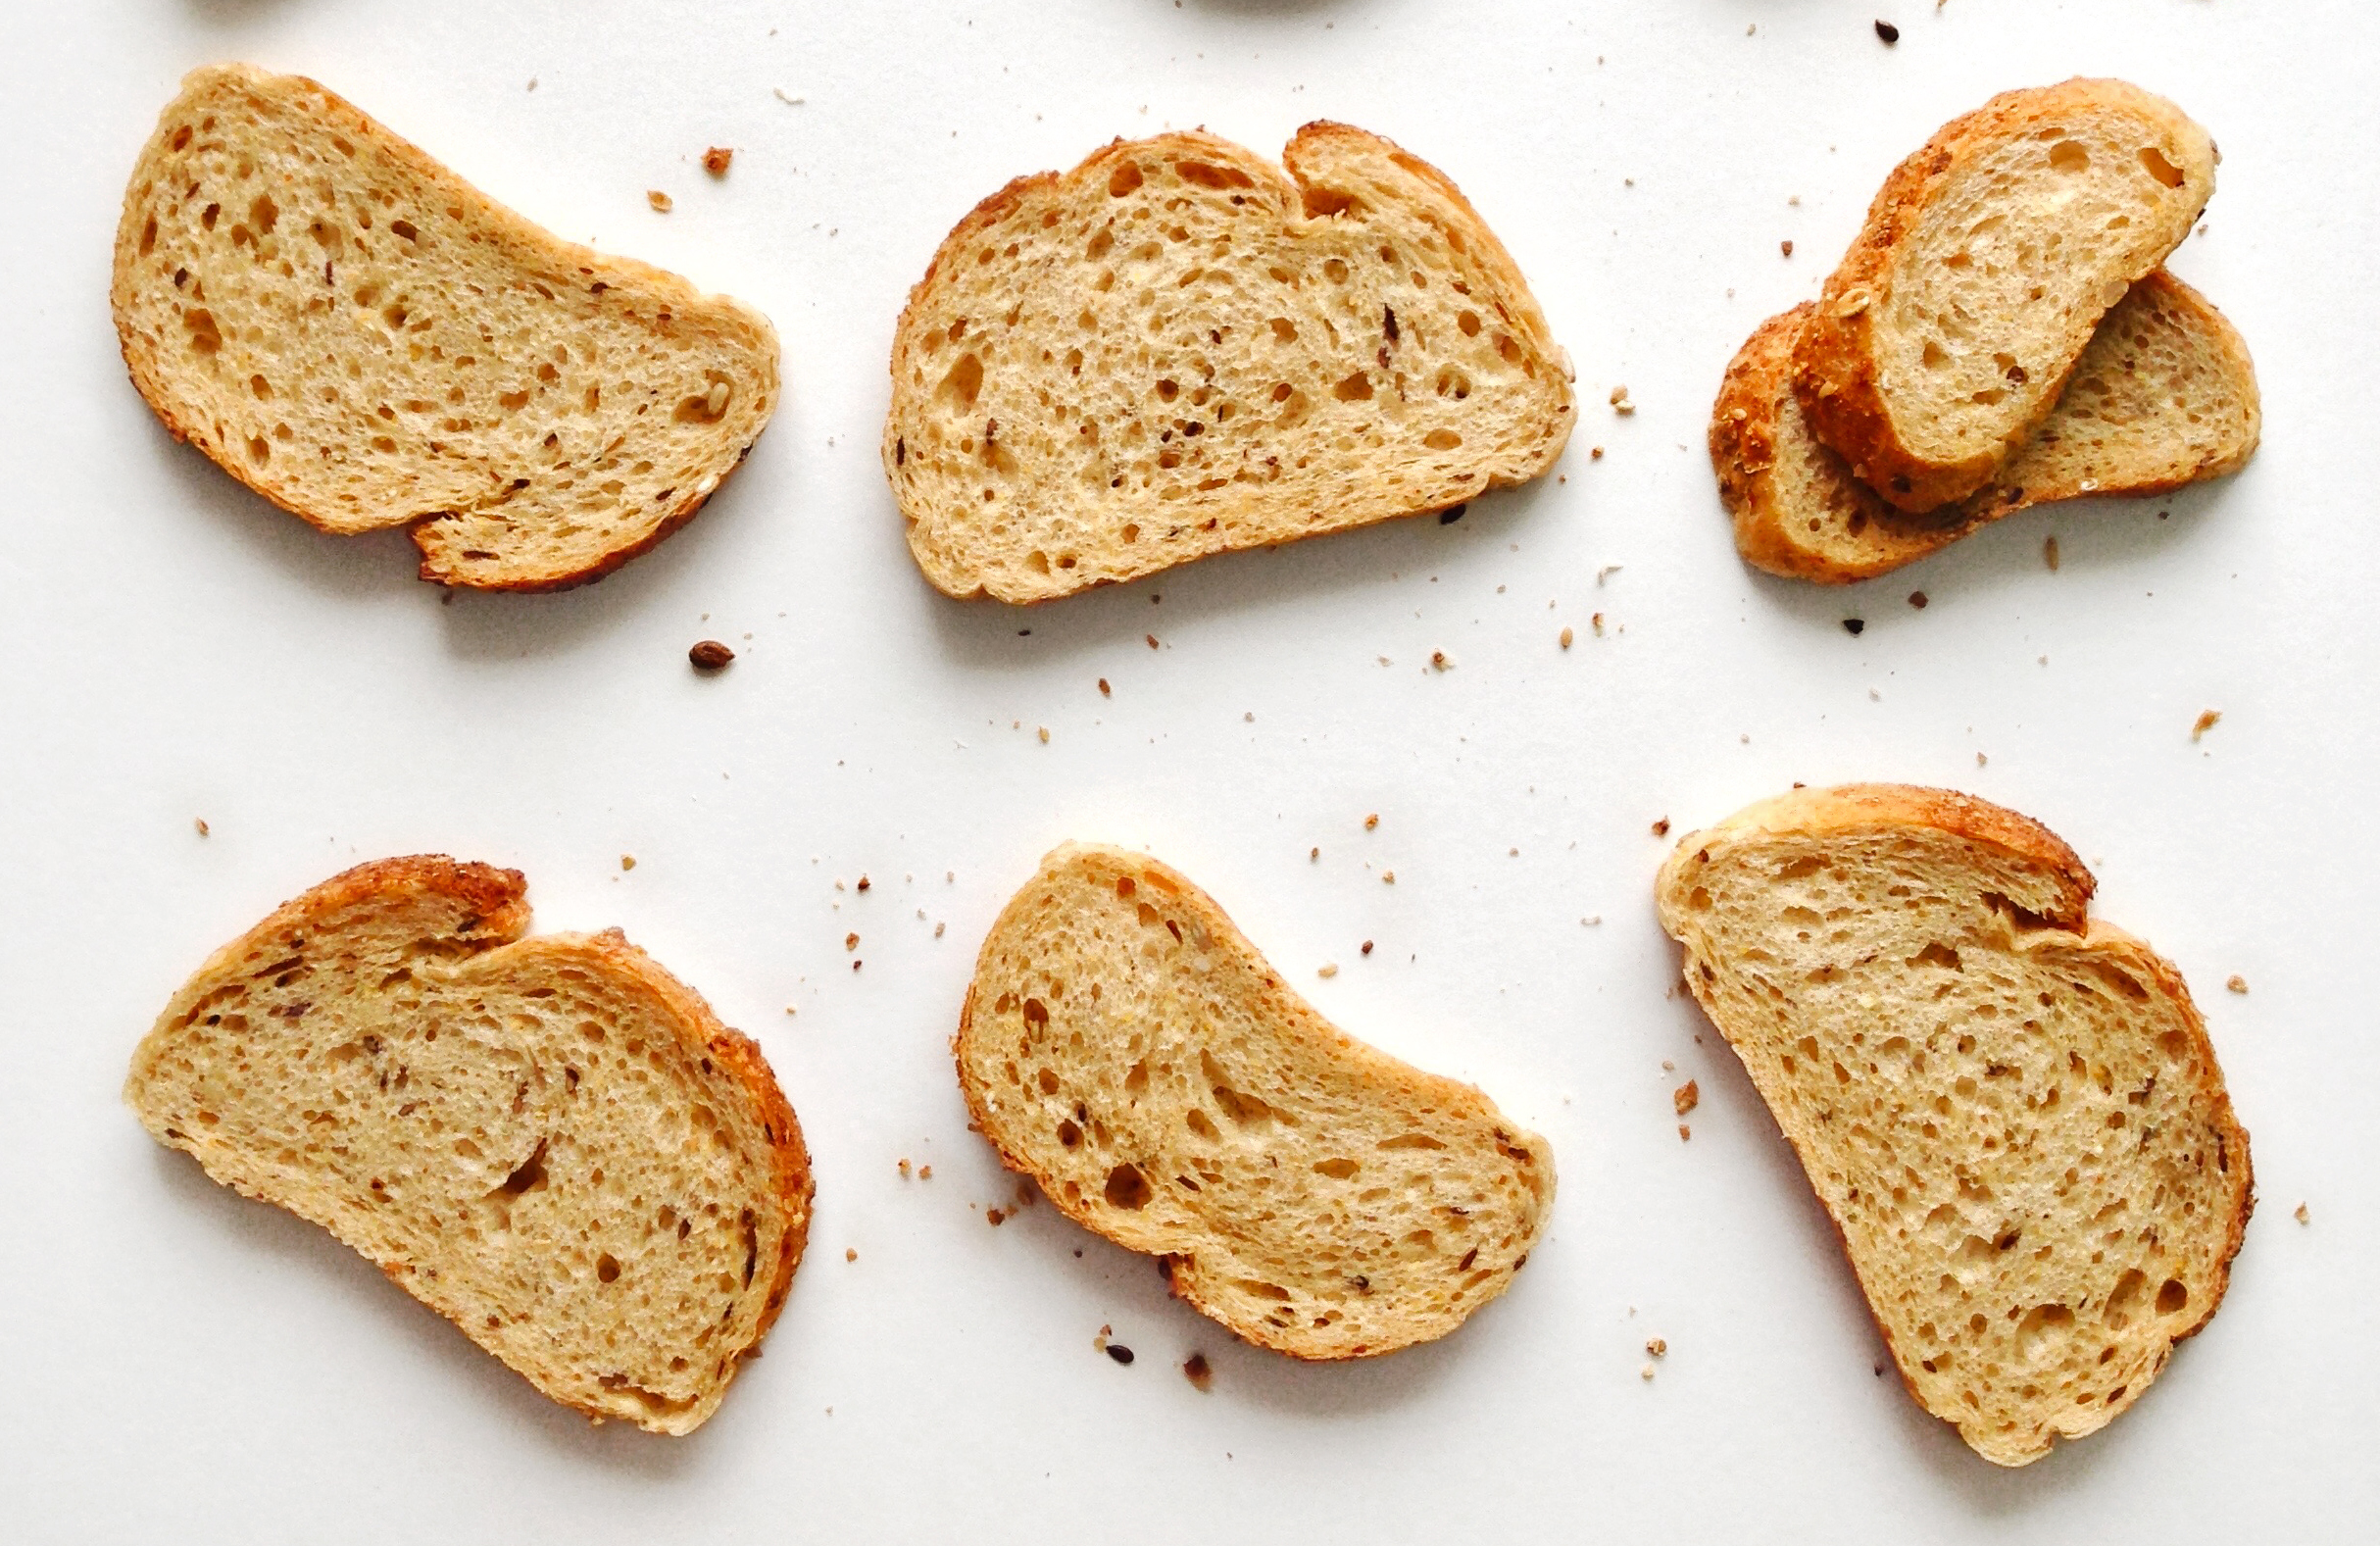 Какой хлеб самый полезный, как выбрать булку, от которой не потолстеешь: советы амурского диетолога / Хлеб — всему голова, но подойдет не всем. Одни отказываются от хлеба, чтобы сохранить стройную фигуру. Другие едят его на завтрак, обед и ужин, совершенно не толстея. «Не надо впадать в крайности, просто необходимо знать, с какими продуктами и какой хлеб можно сочетать, в каком количестве есть, а когда от него лучше воздержаться», — советует главный внештатный диетолог министерства здравоохранения Амурской области Светлана Белова.